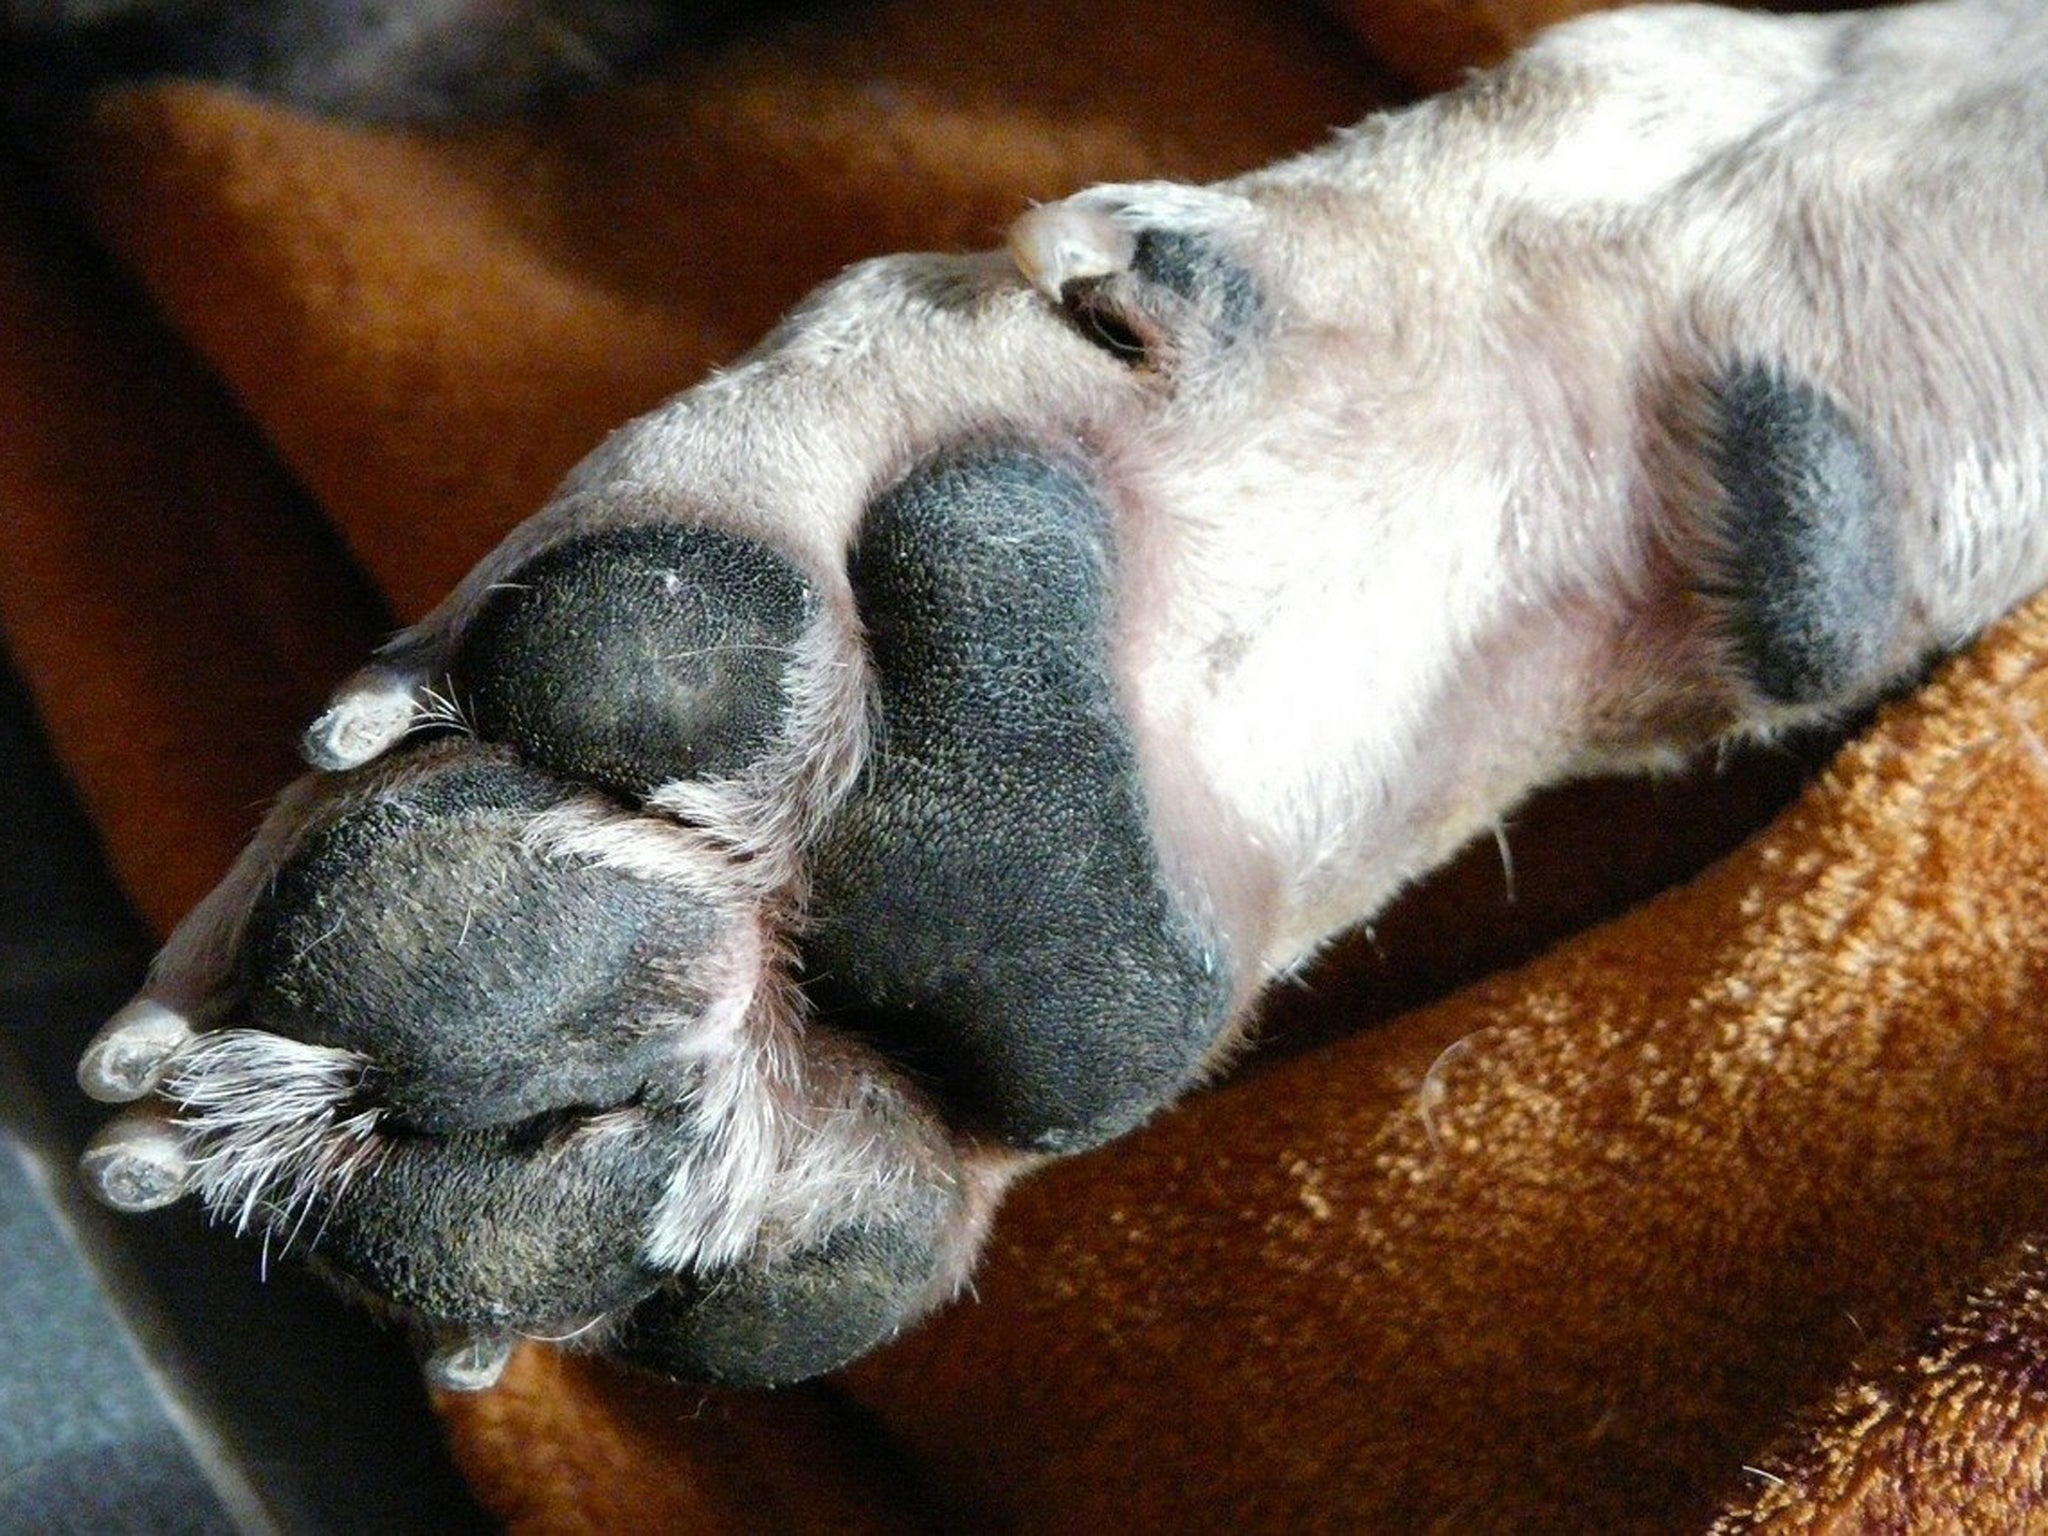 paraperro Tipps zur Hundegesundheit und weitere Hundethemen im Blog